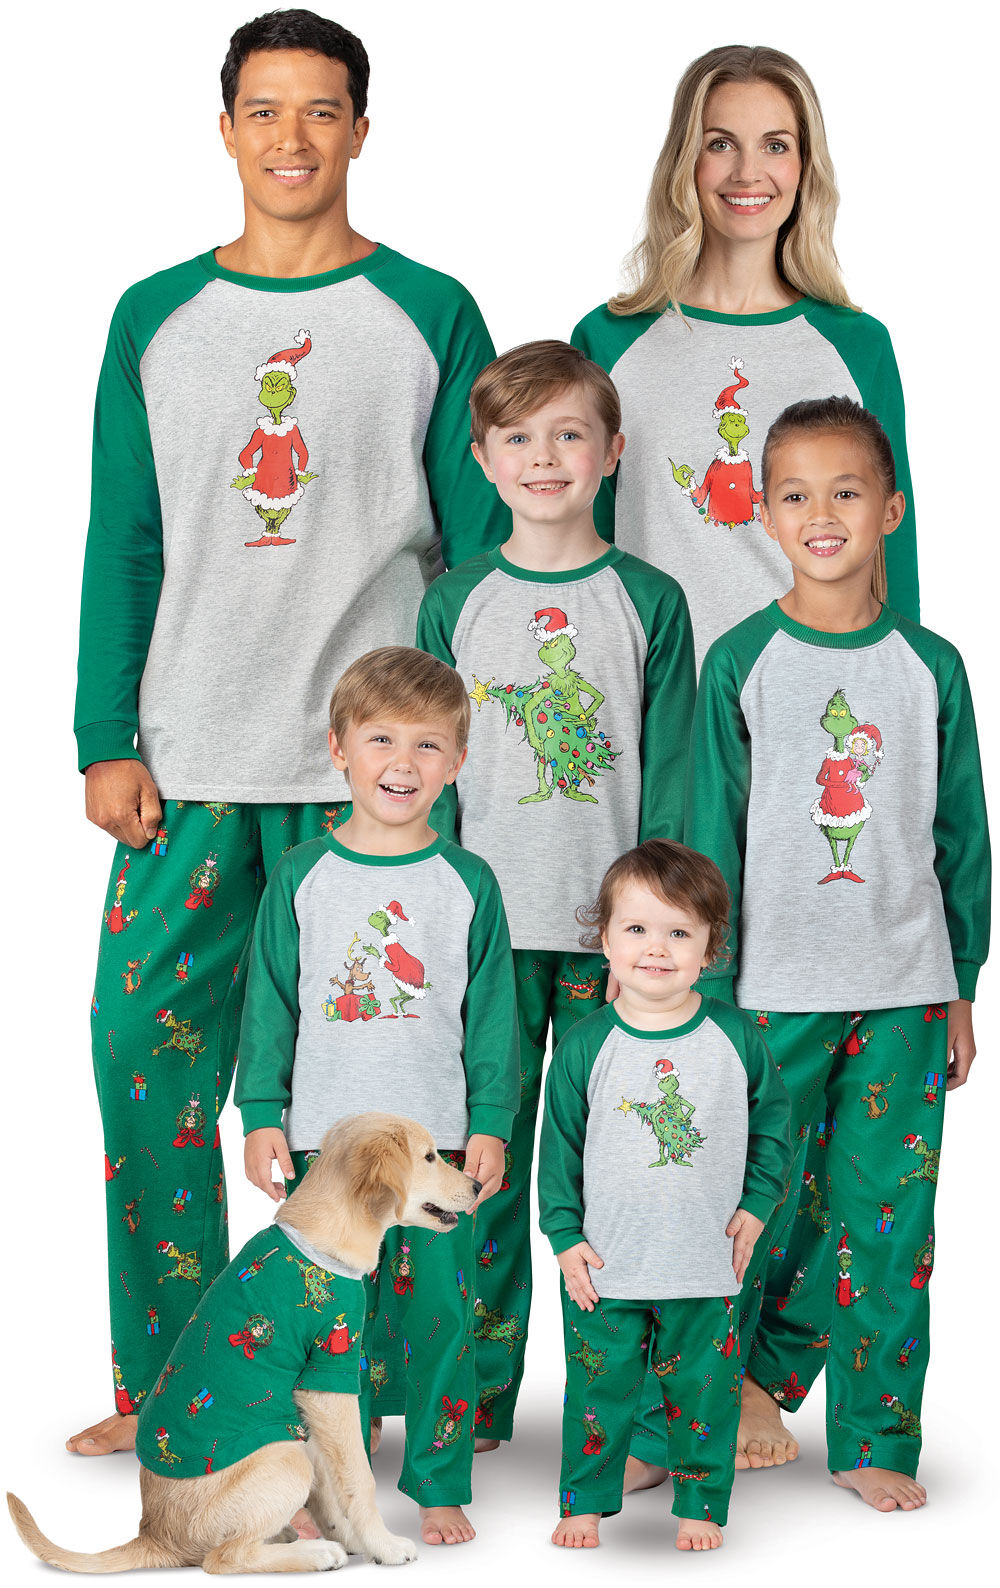 Family Matching Christmas Pajamas Set PajamaGram Holiday Mickey Mouse Pajamas 